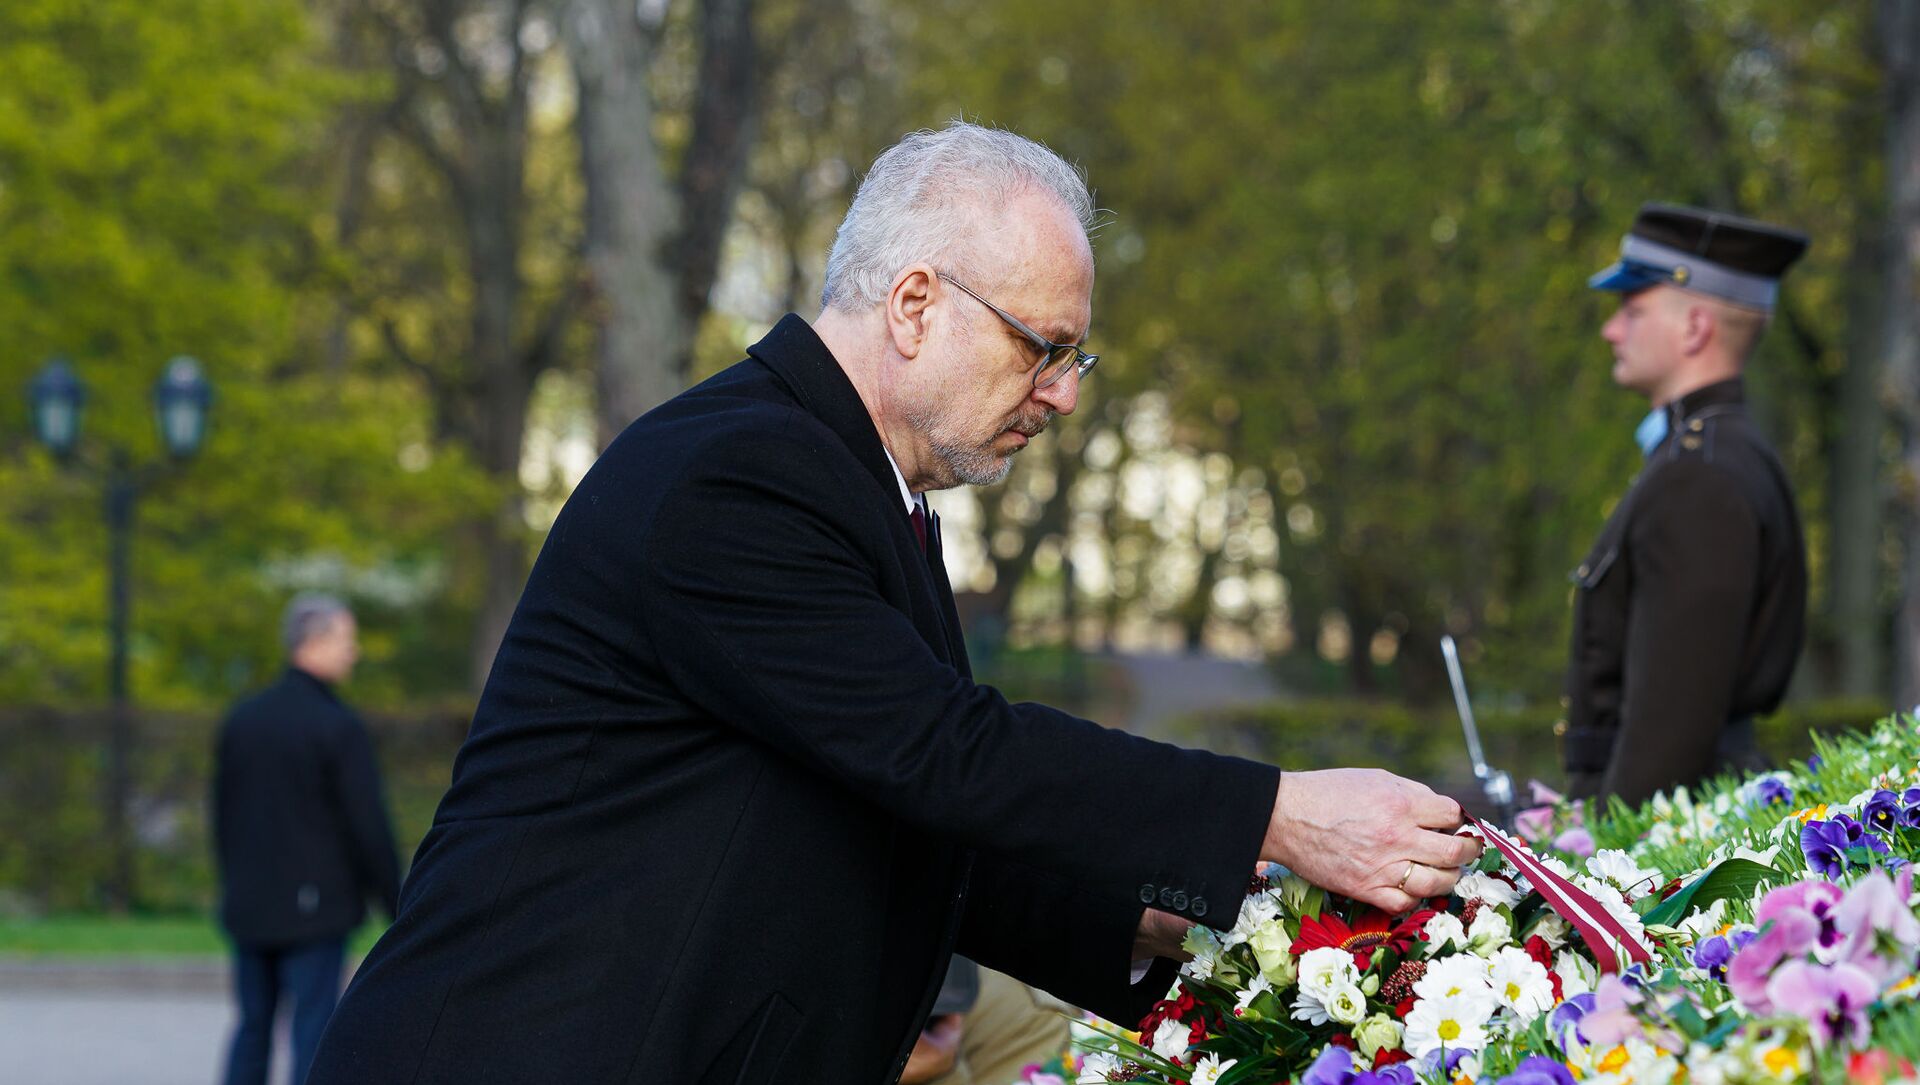 Президент Латвии Эгилс Левитс возлагает цветы к памятнику Свободы 4 мая - Sputnik Латвия, 1920, 29.04.2021